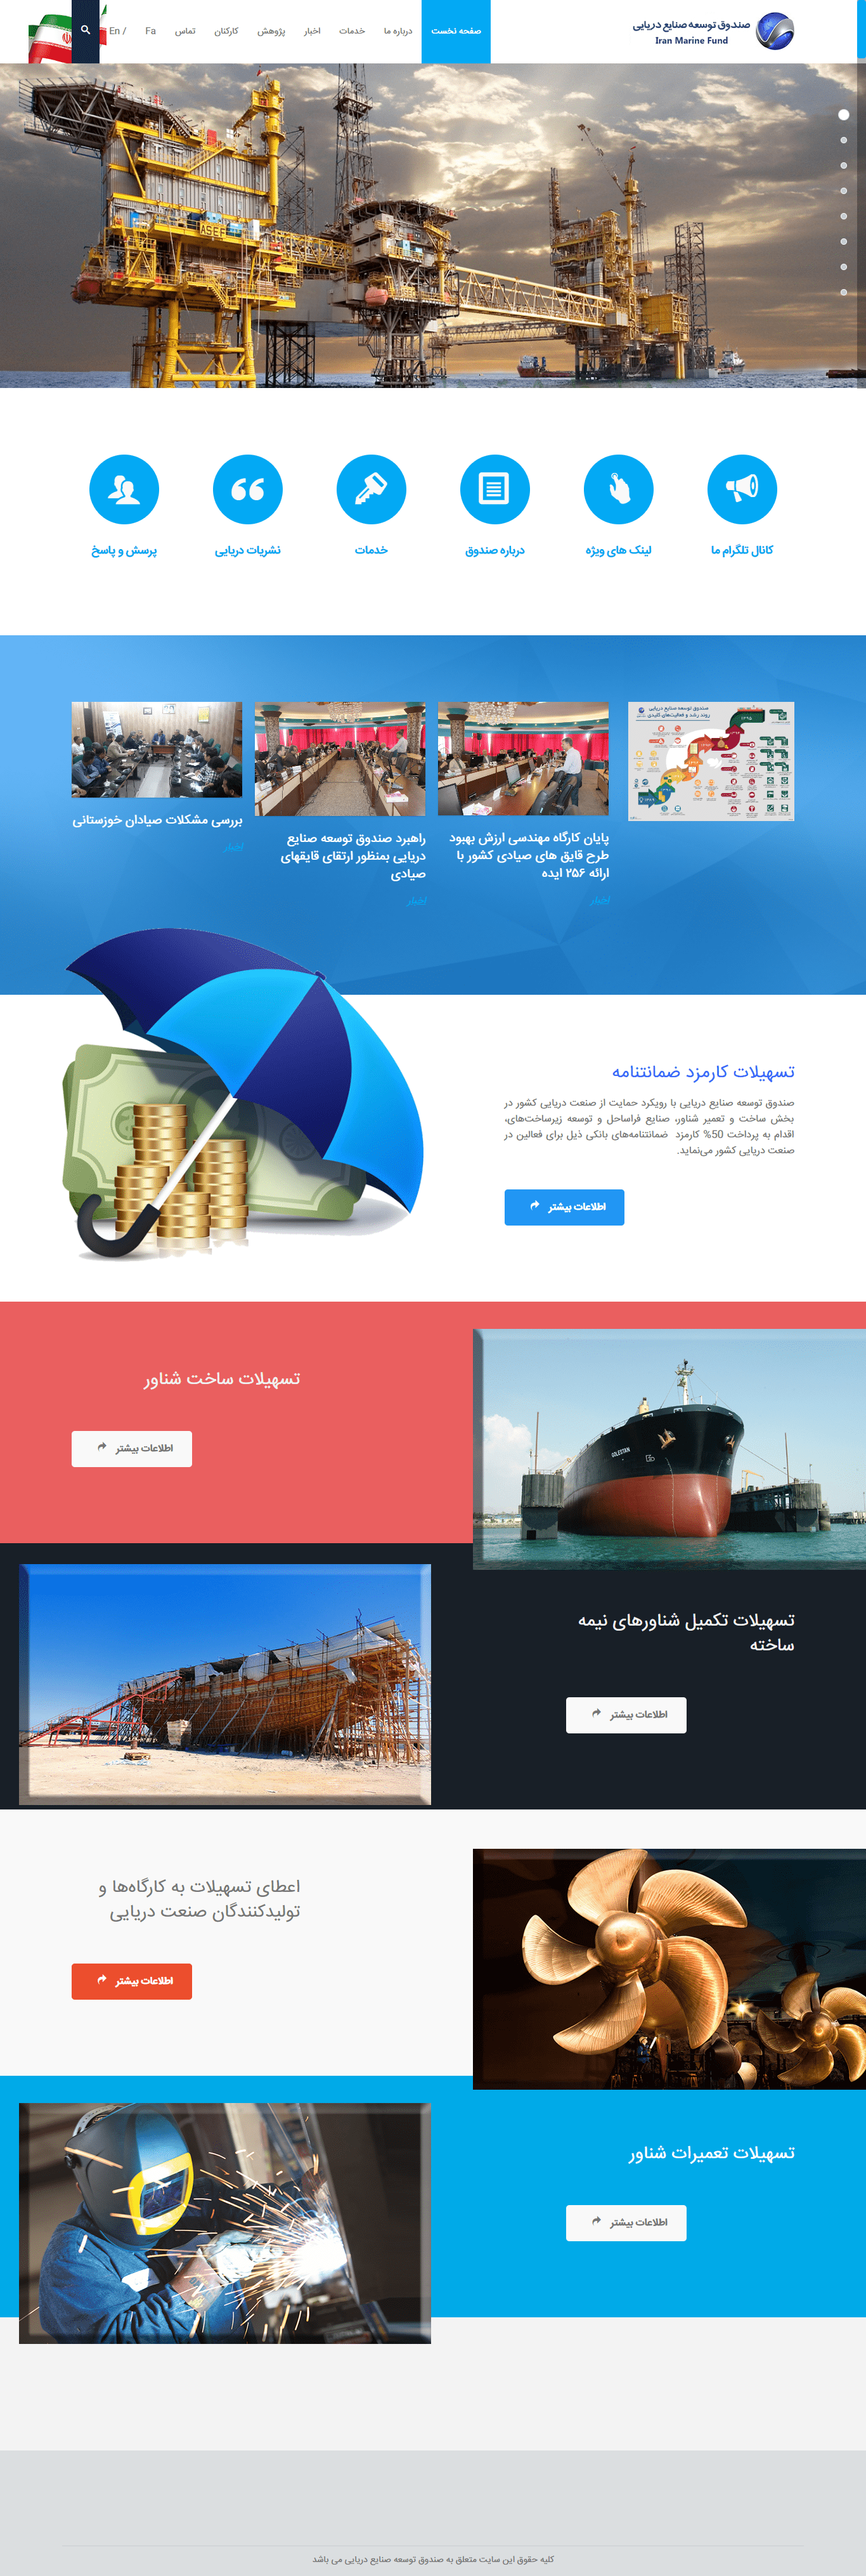 طراحی سایت صندوق توسعه صنایع دریایی